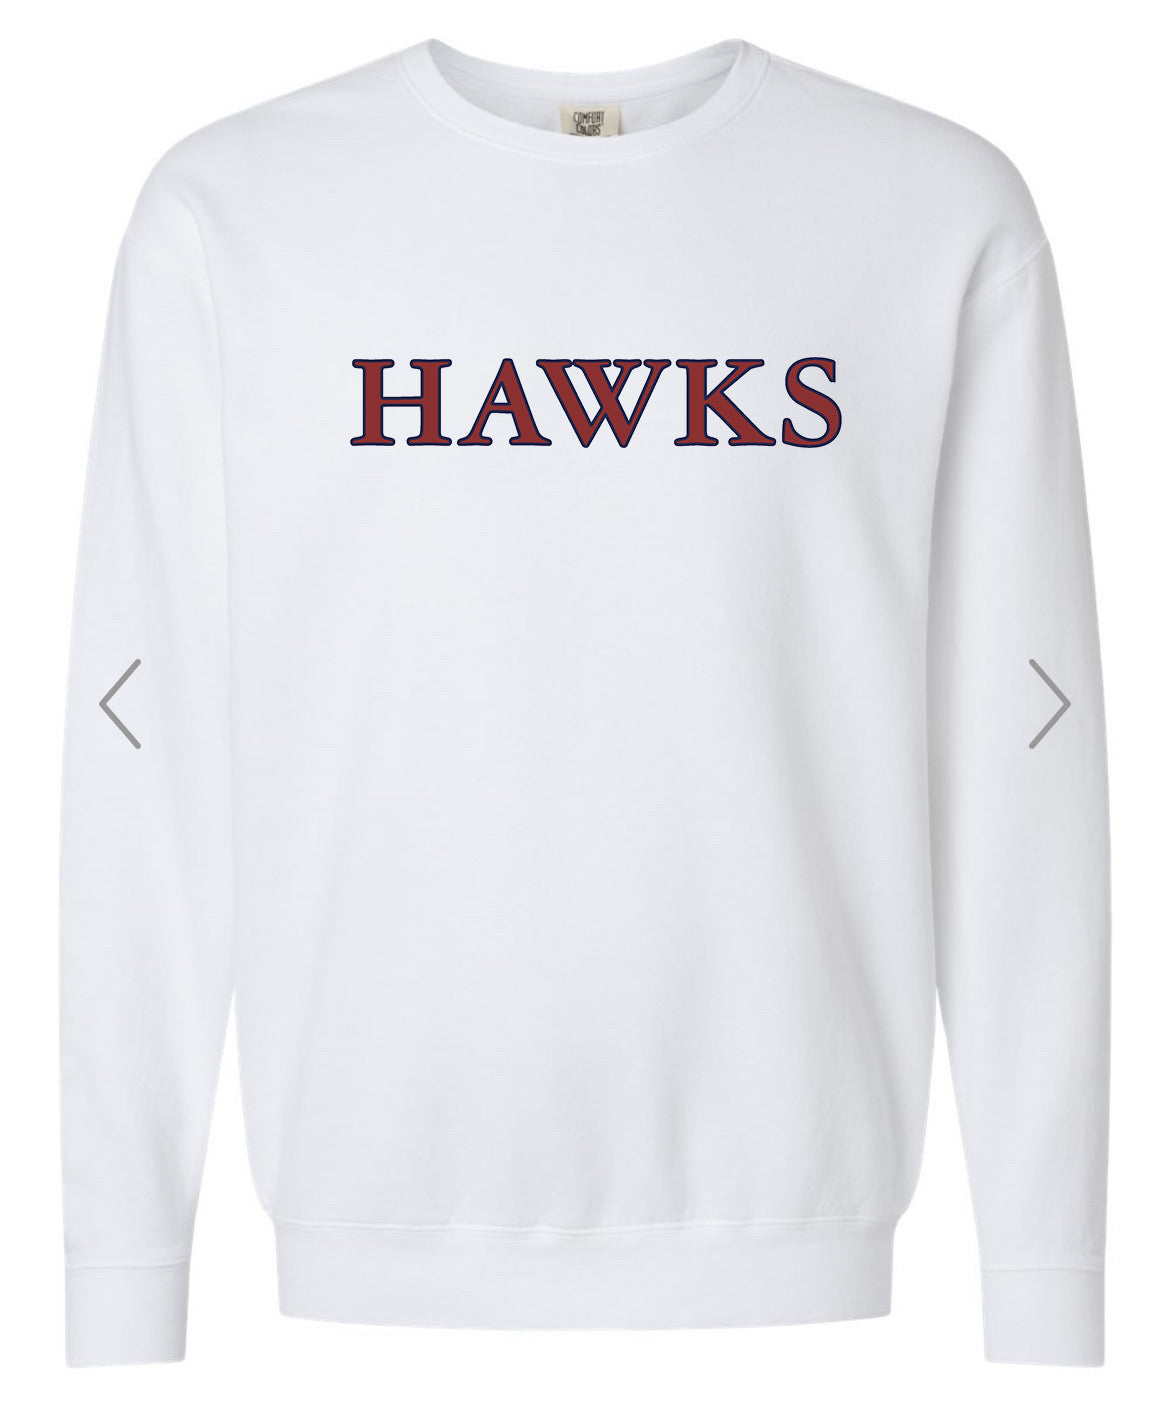 Hawks White Sweatshirt